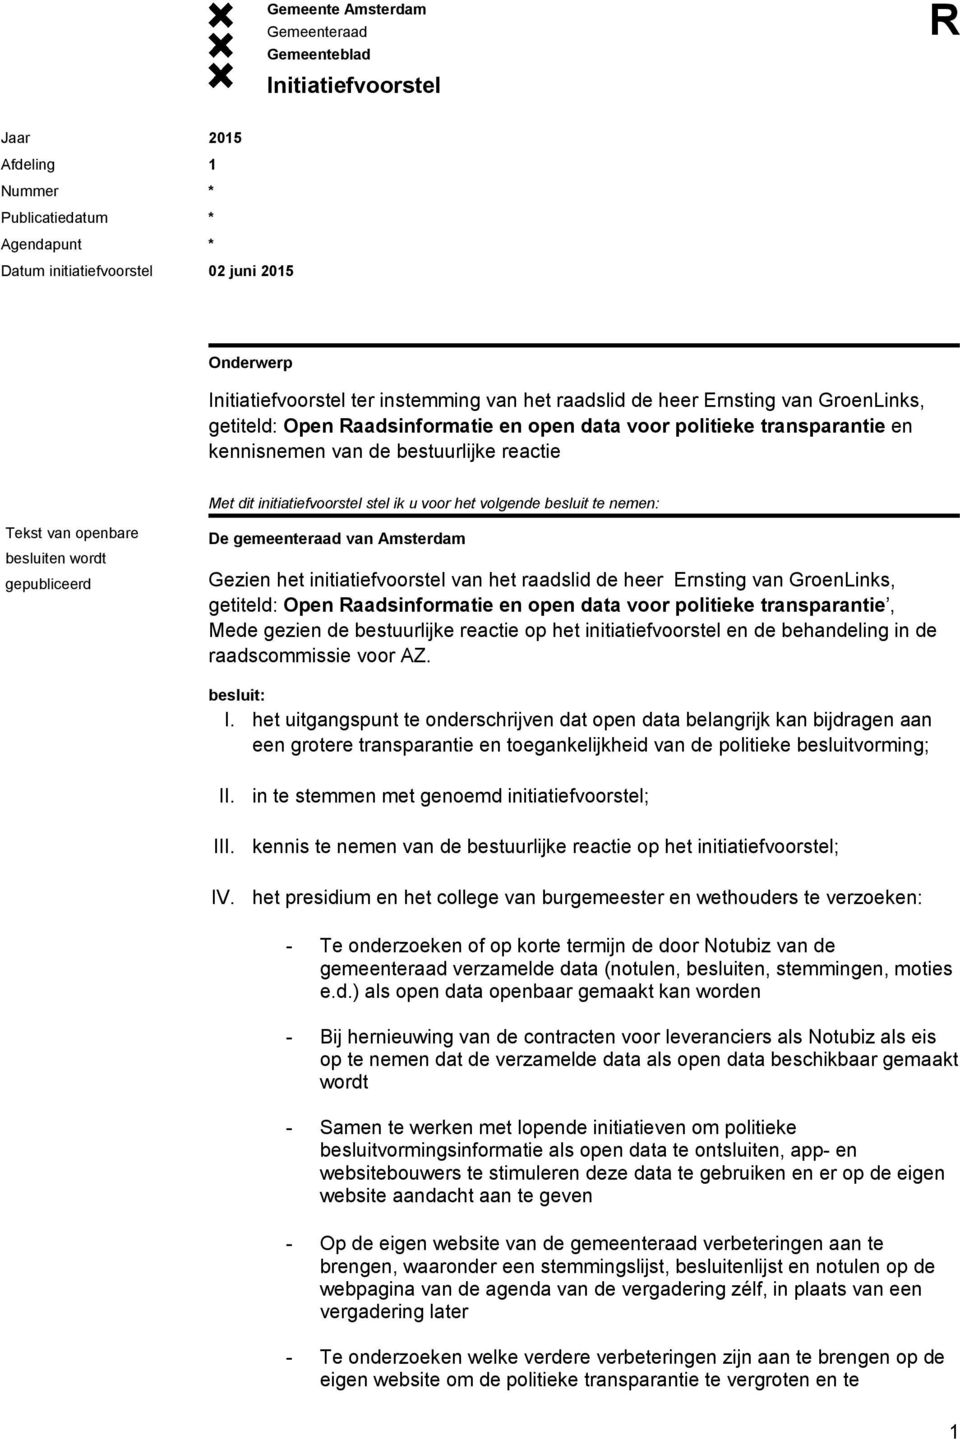 gepubliceerd De gemeenteraad van Amsterdam Gezien het initiatiefvoorstel van het raadslid de heer Ernsting van GroenLinks, getiteld: Open aadsinformatie en open data voor politieke transparantie,